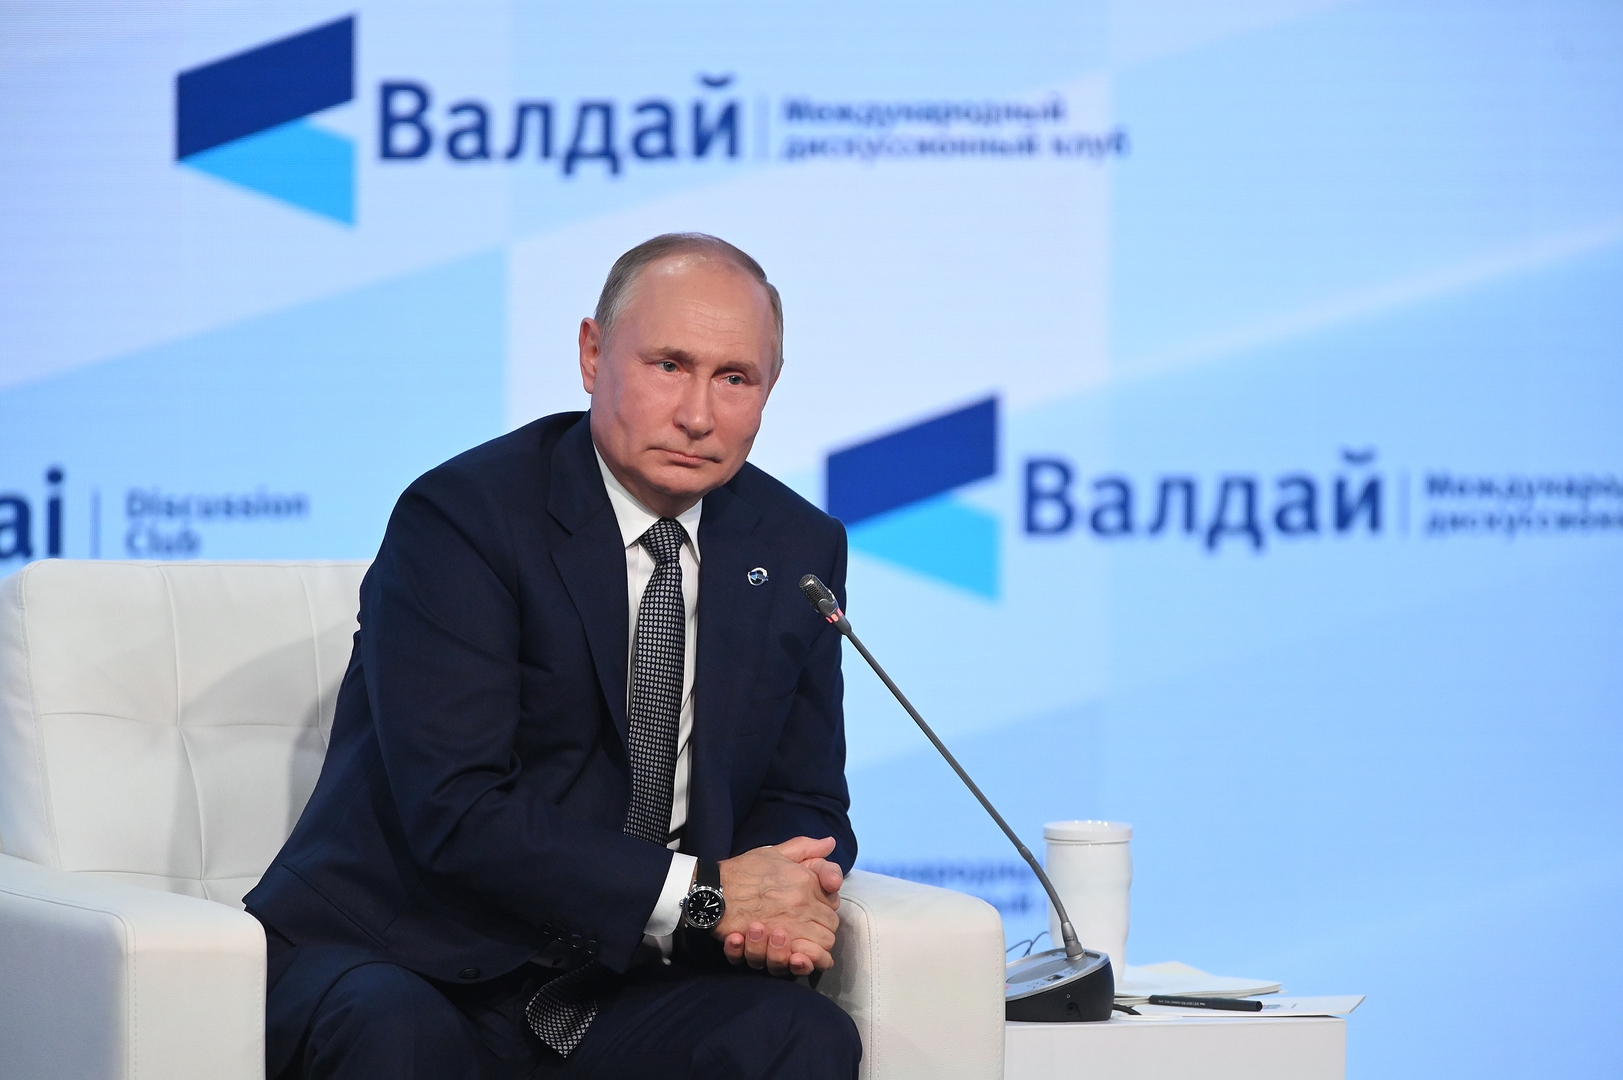 بوتين: الشركات الأمنية الخاصة من روسيا لا تعمل بتكليف من الدولة